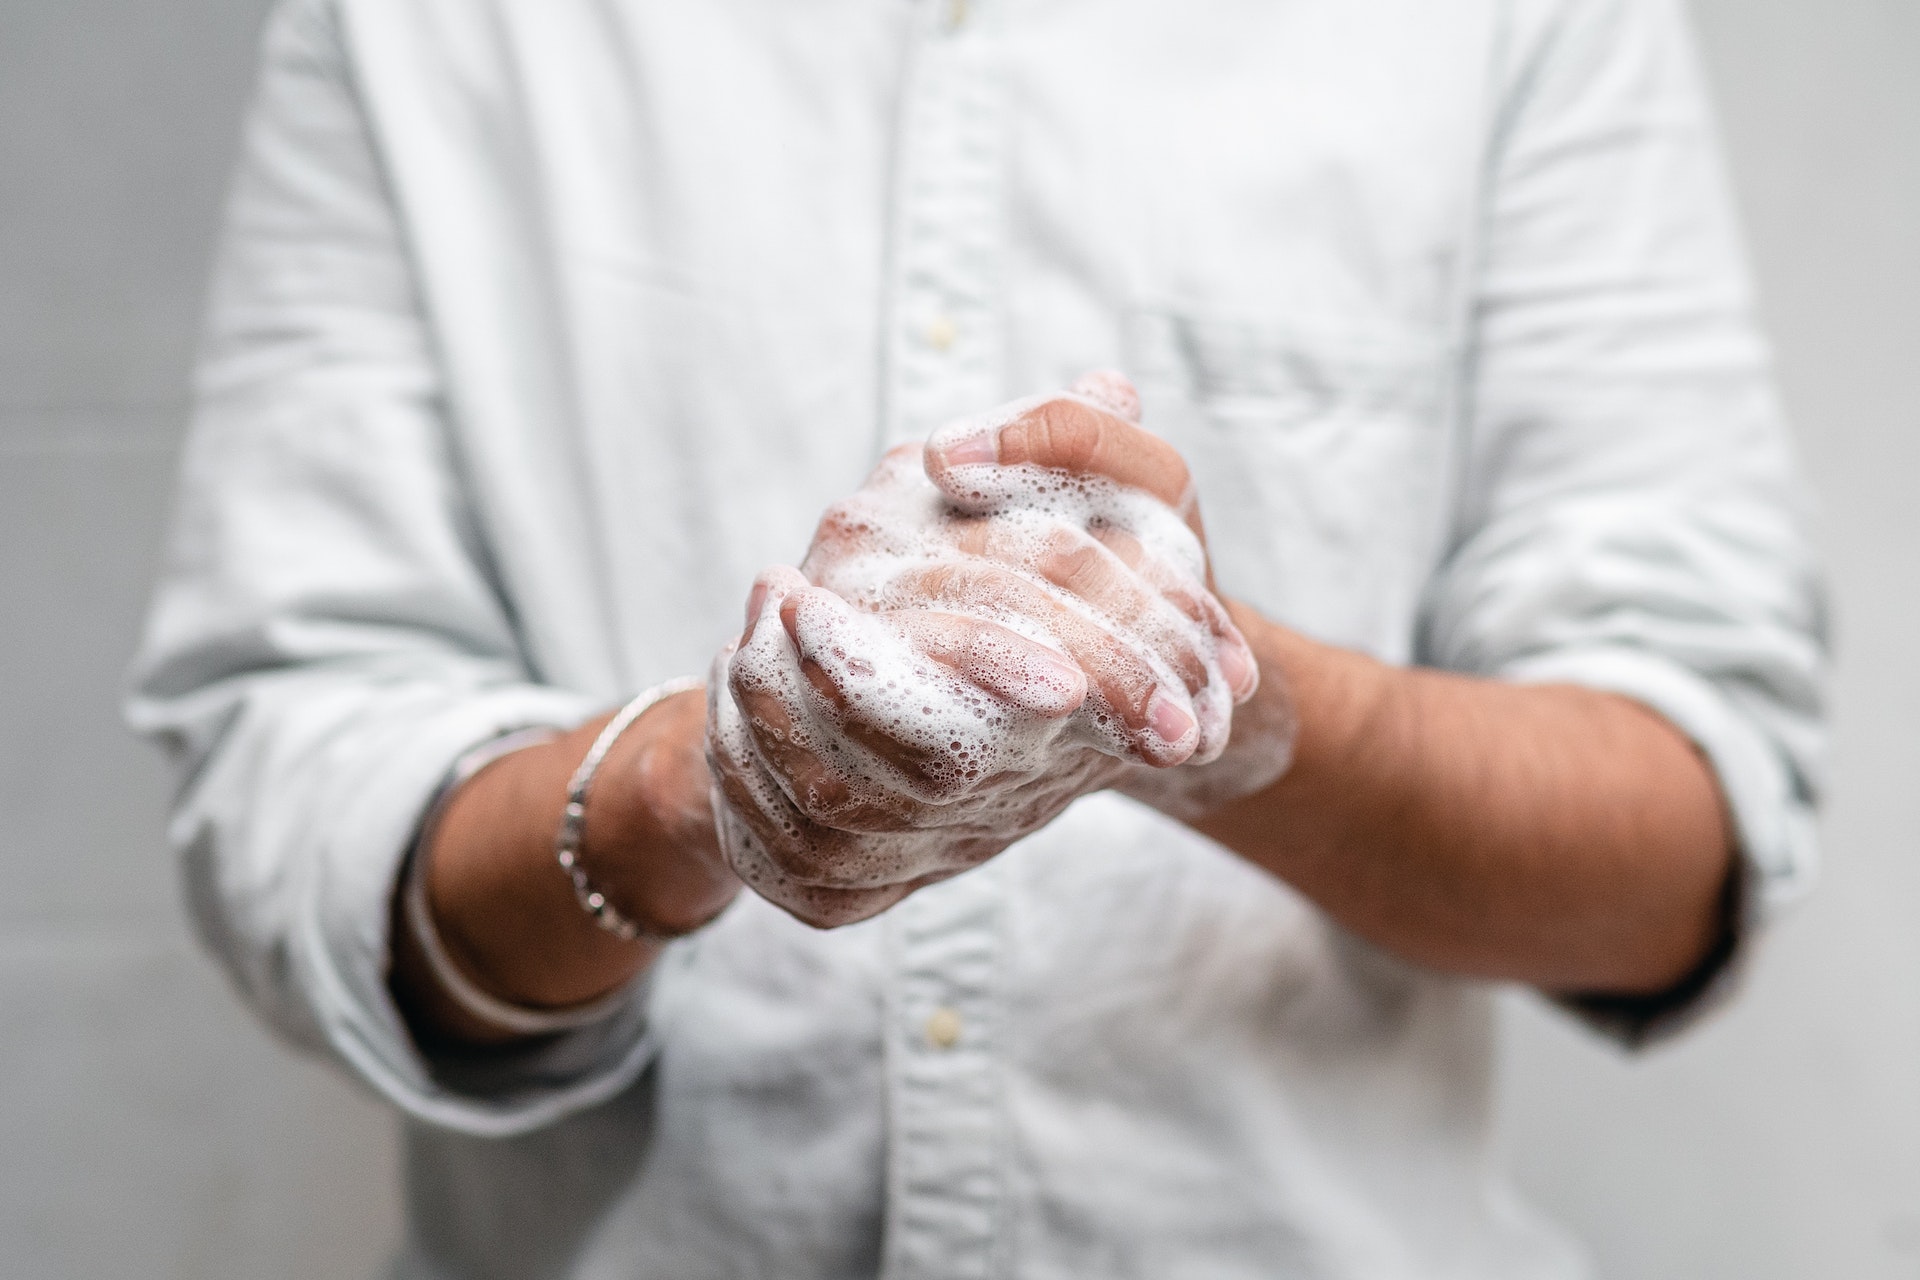 شستن دست -چگونه با ترس(فوبیا) خود از میکروب مقابله کنیم؟